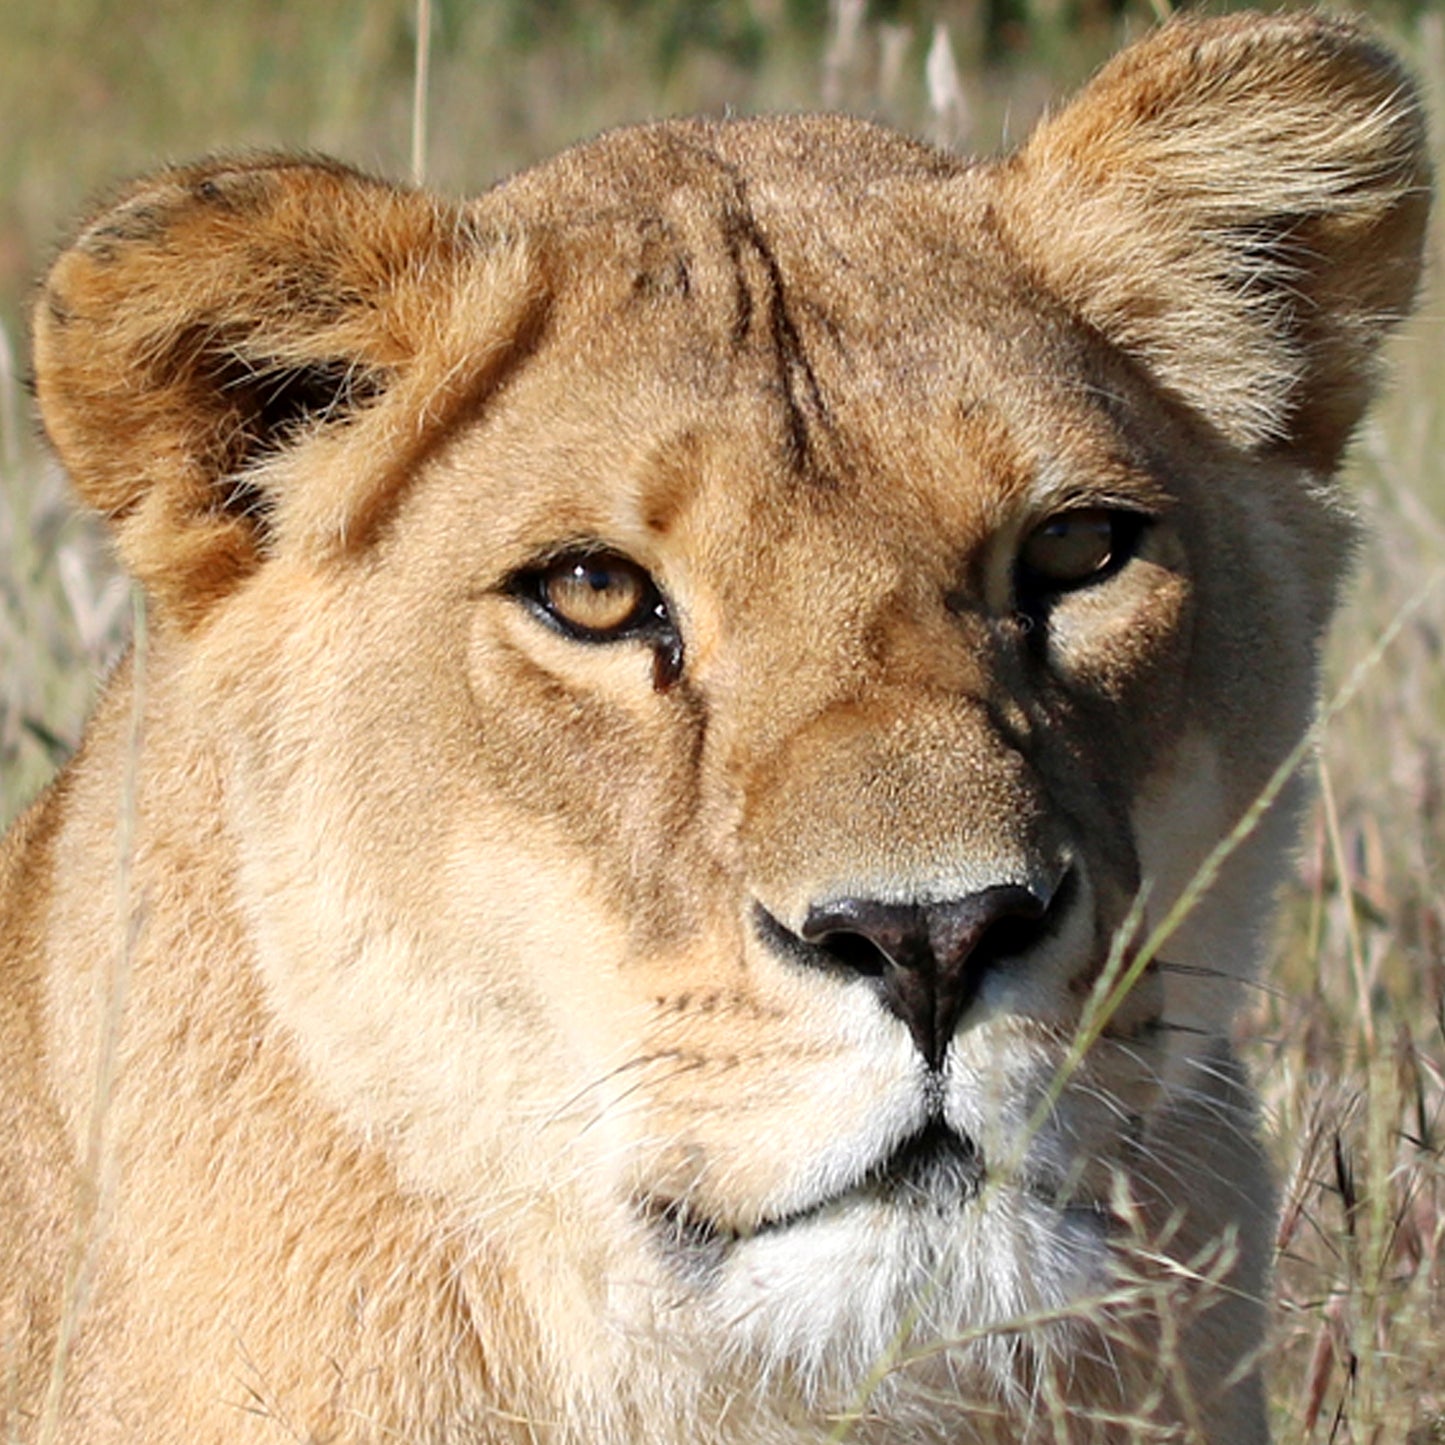 Lion family adoption - Africa and Kiara